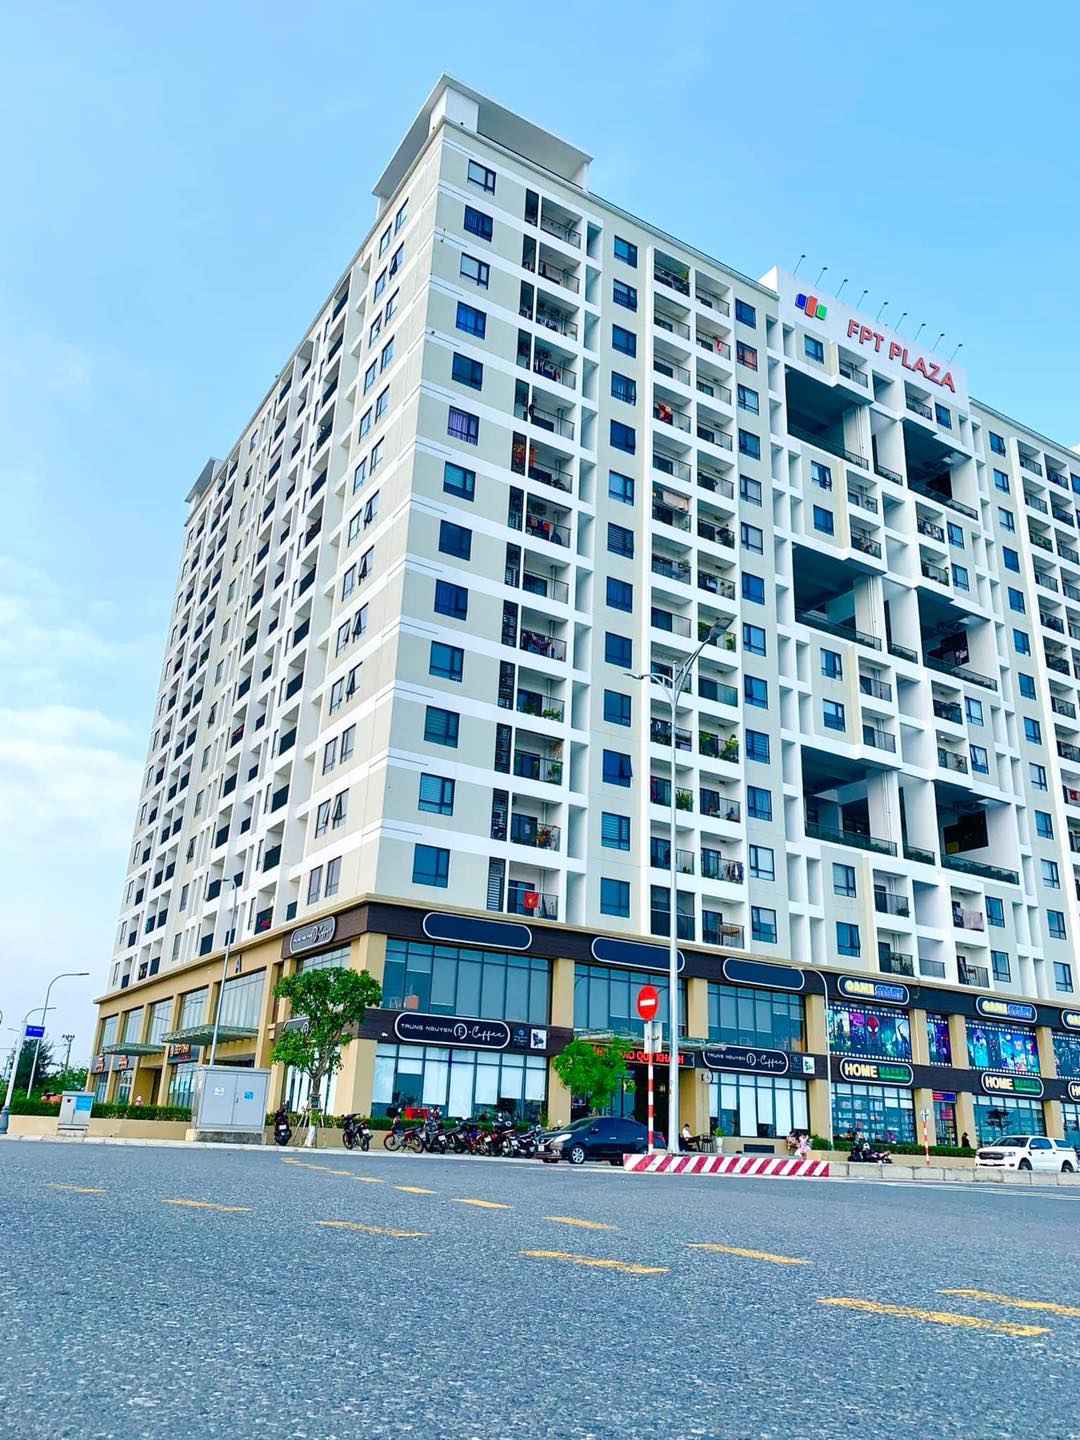 Cho thuê shophouse căn hộ cao cấp FPT Plaza2 giá rẻ tại Đà Nẵng.